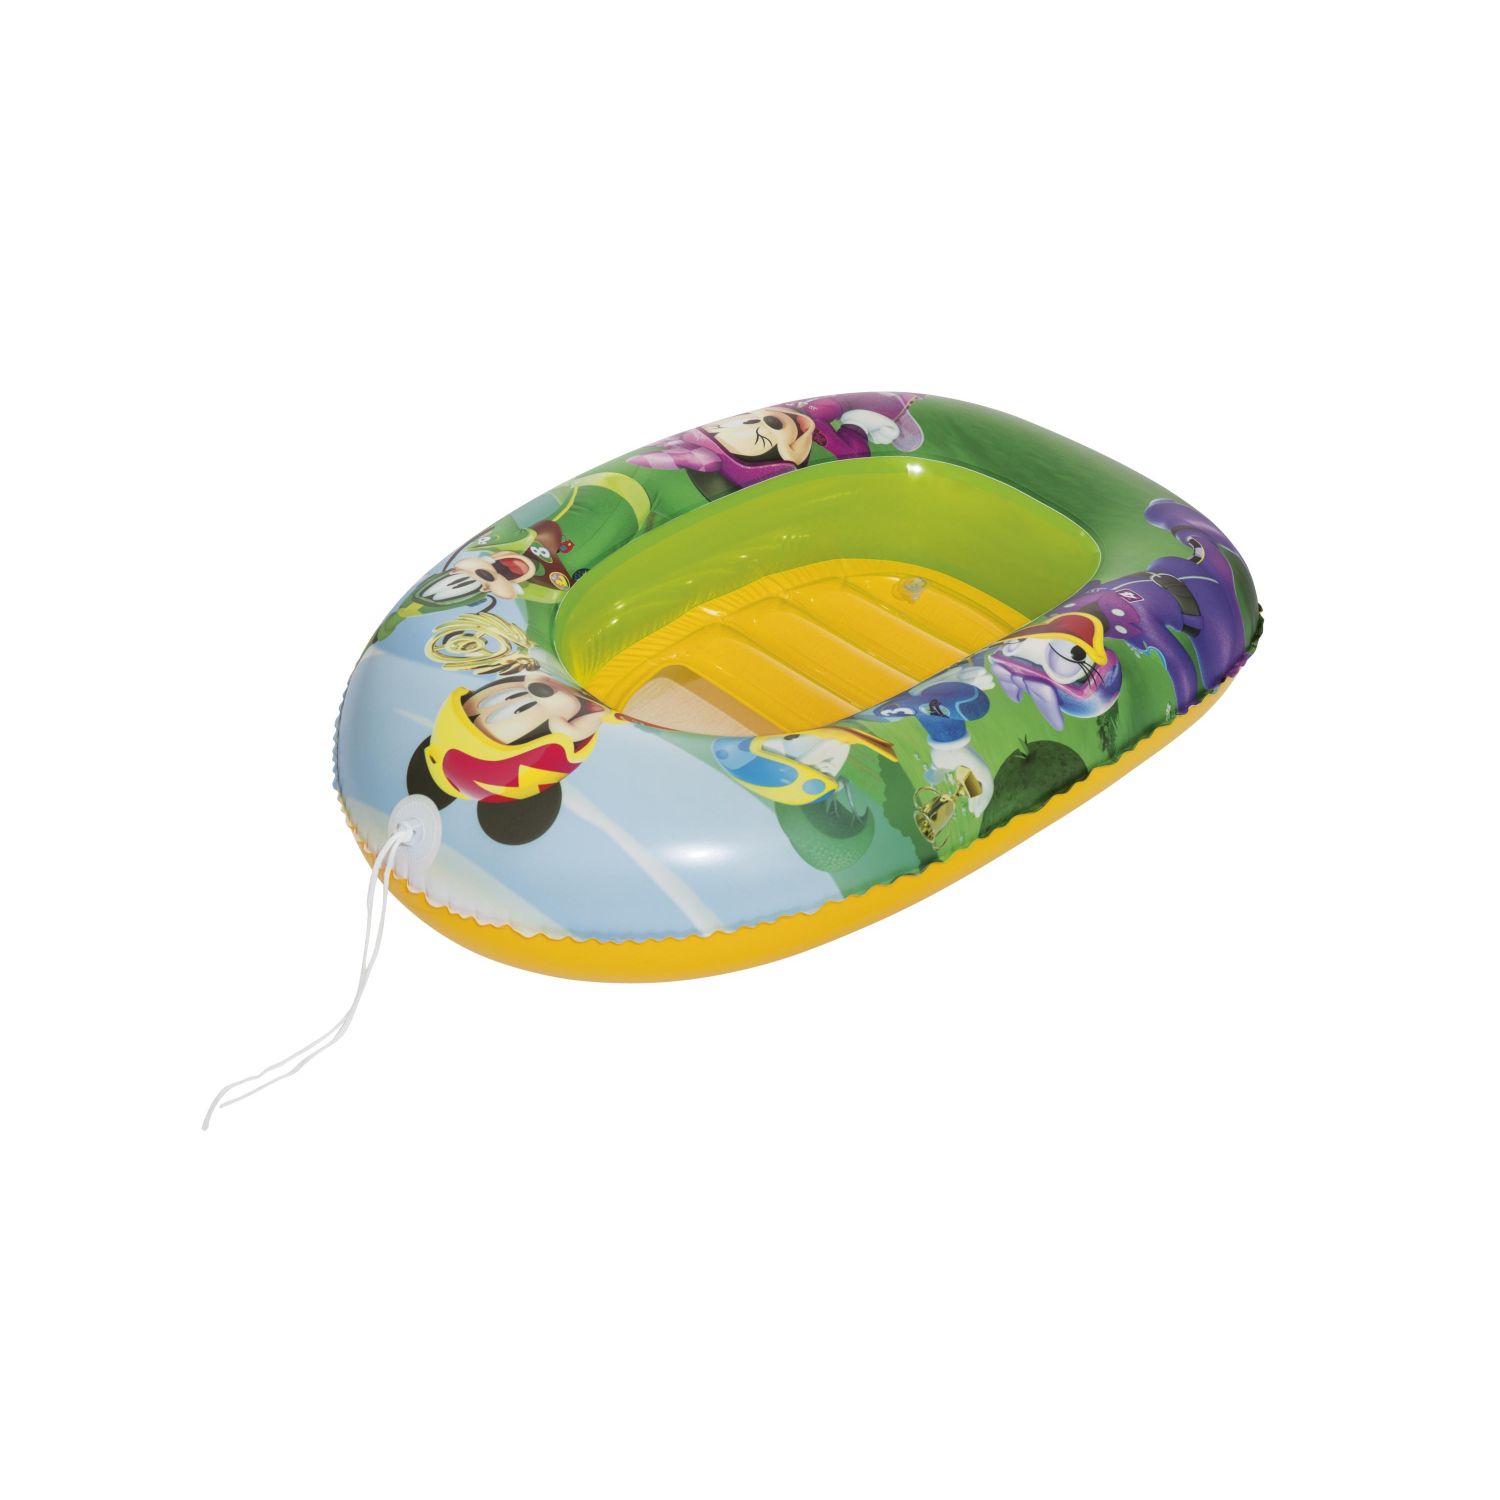 Bote inflable para niños 102cm x 69cm - Bestway-91003-Multicolor